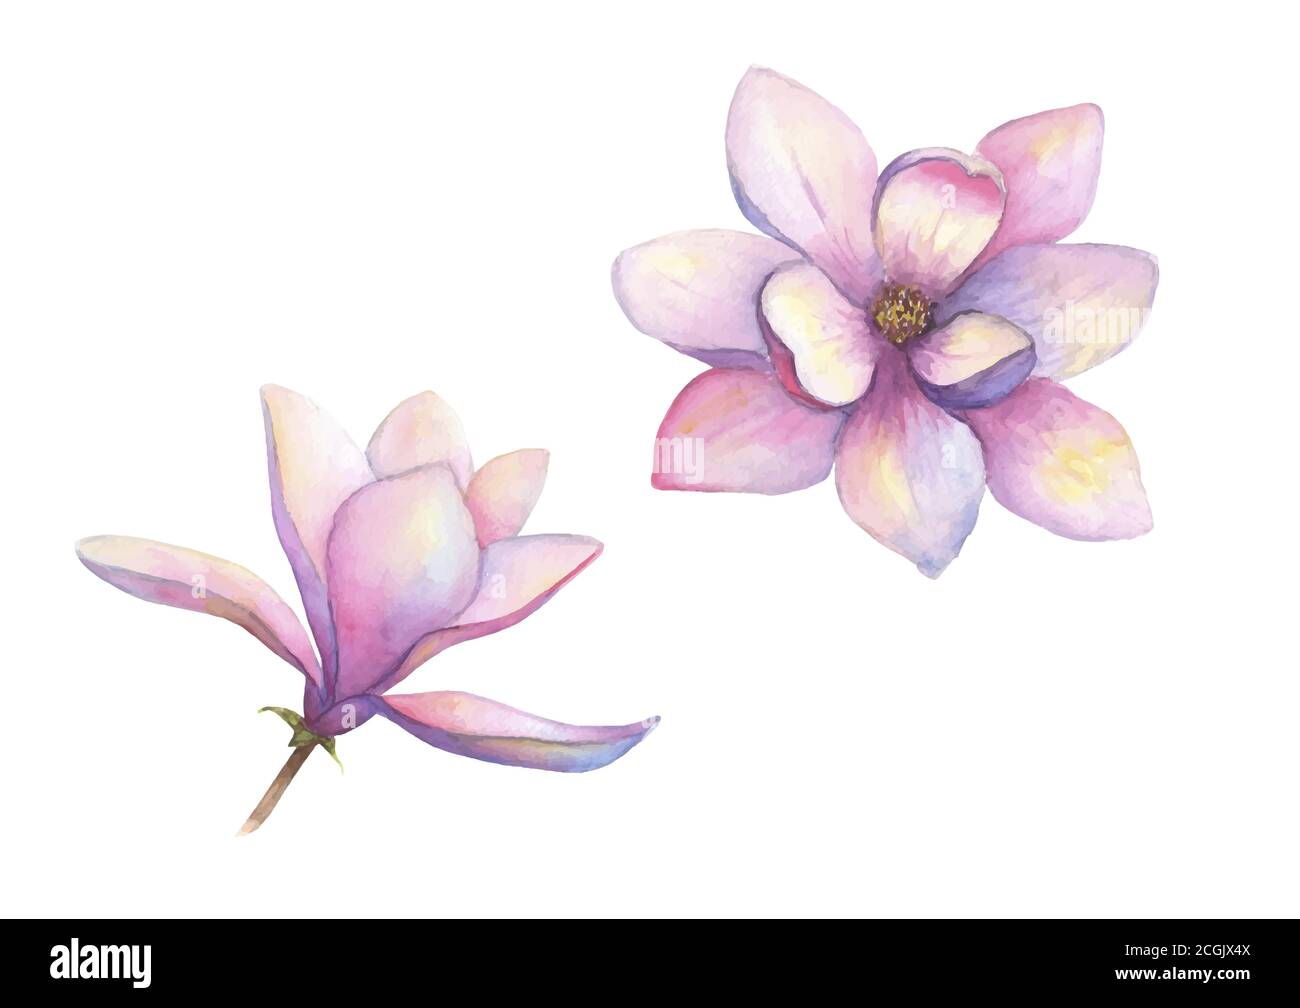 Acquerello splendido insieme di fiori magnolia isolato su sfondo bianco. Acquerello disegnato a mano primavera elegante illustrazione botanica. Per l'invito, Illustrazione Vettoriale